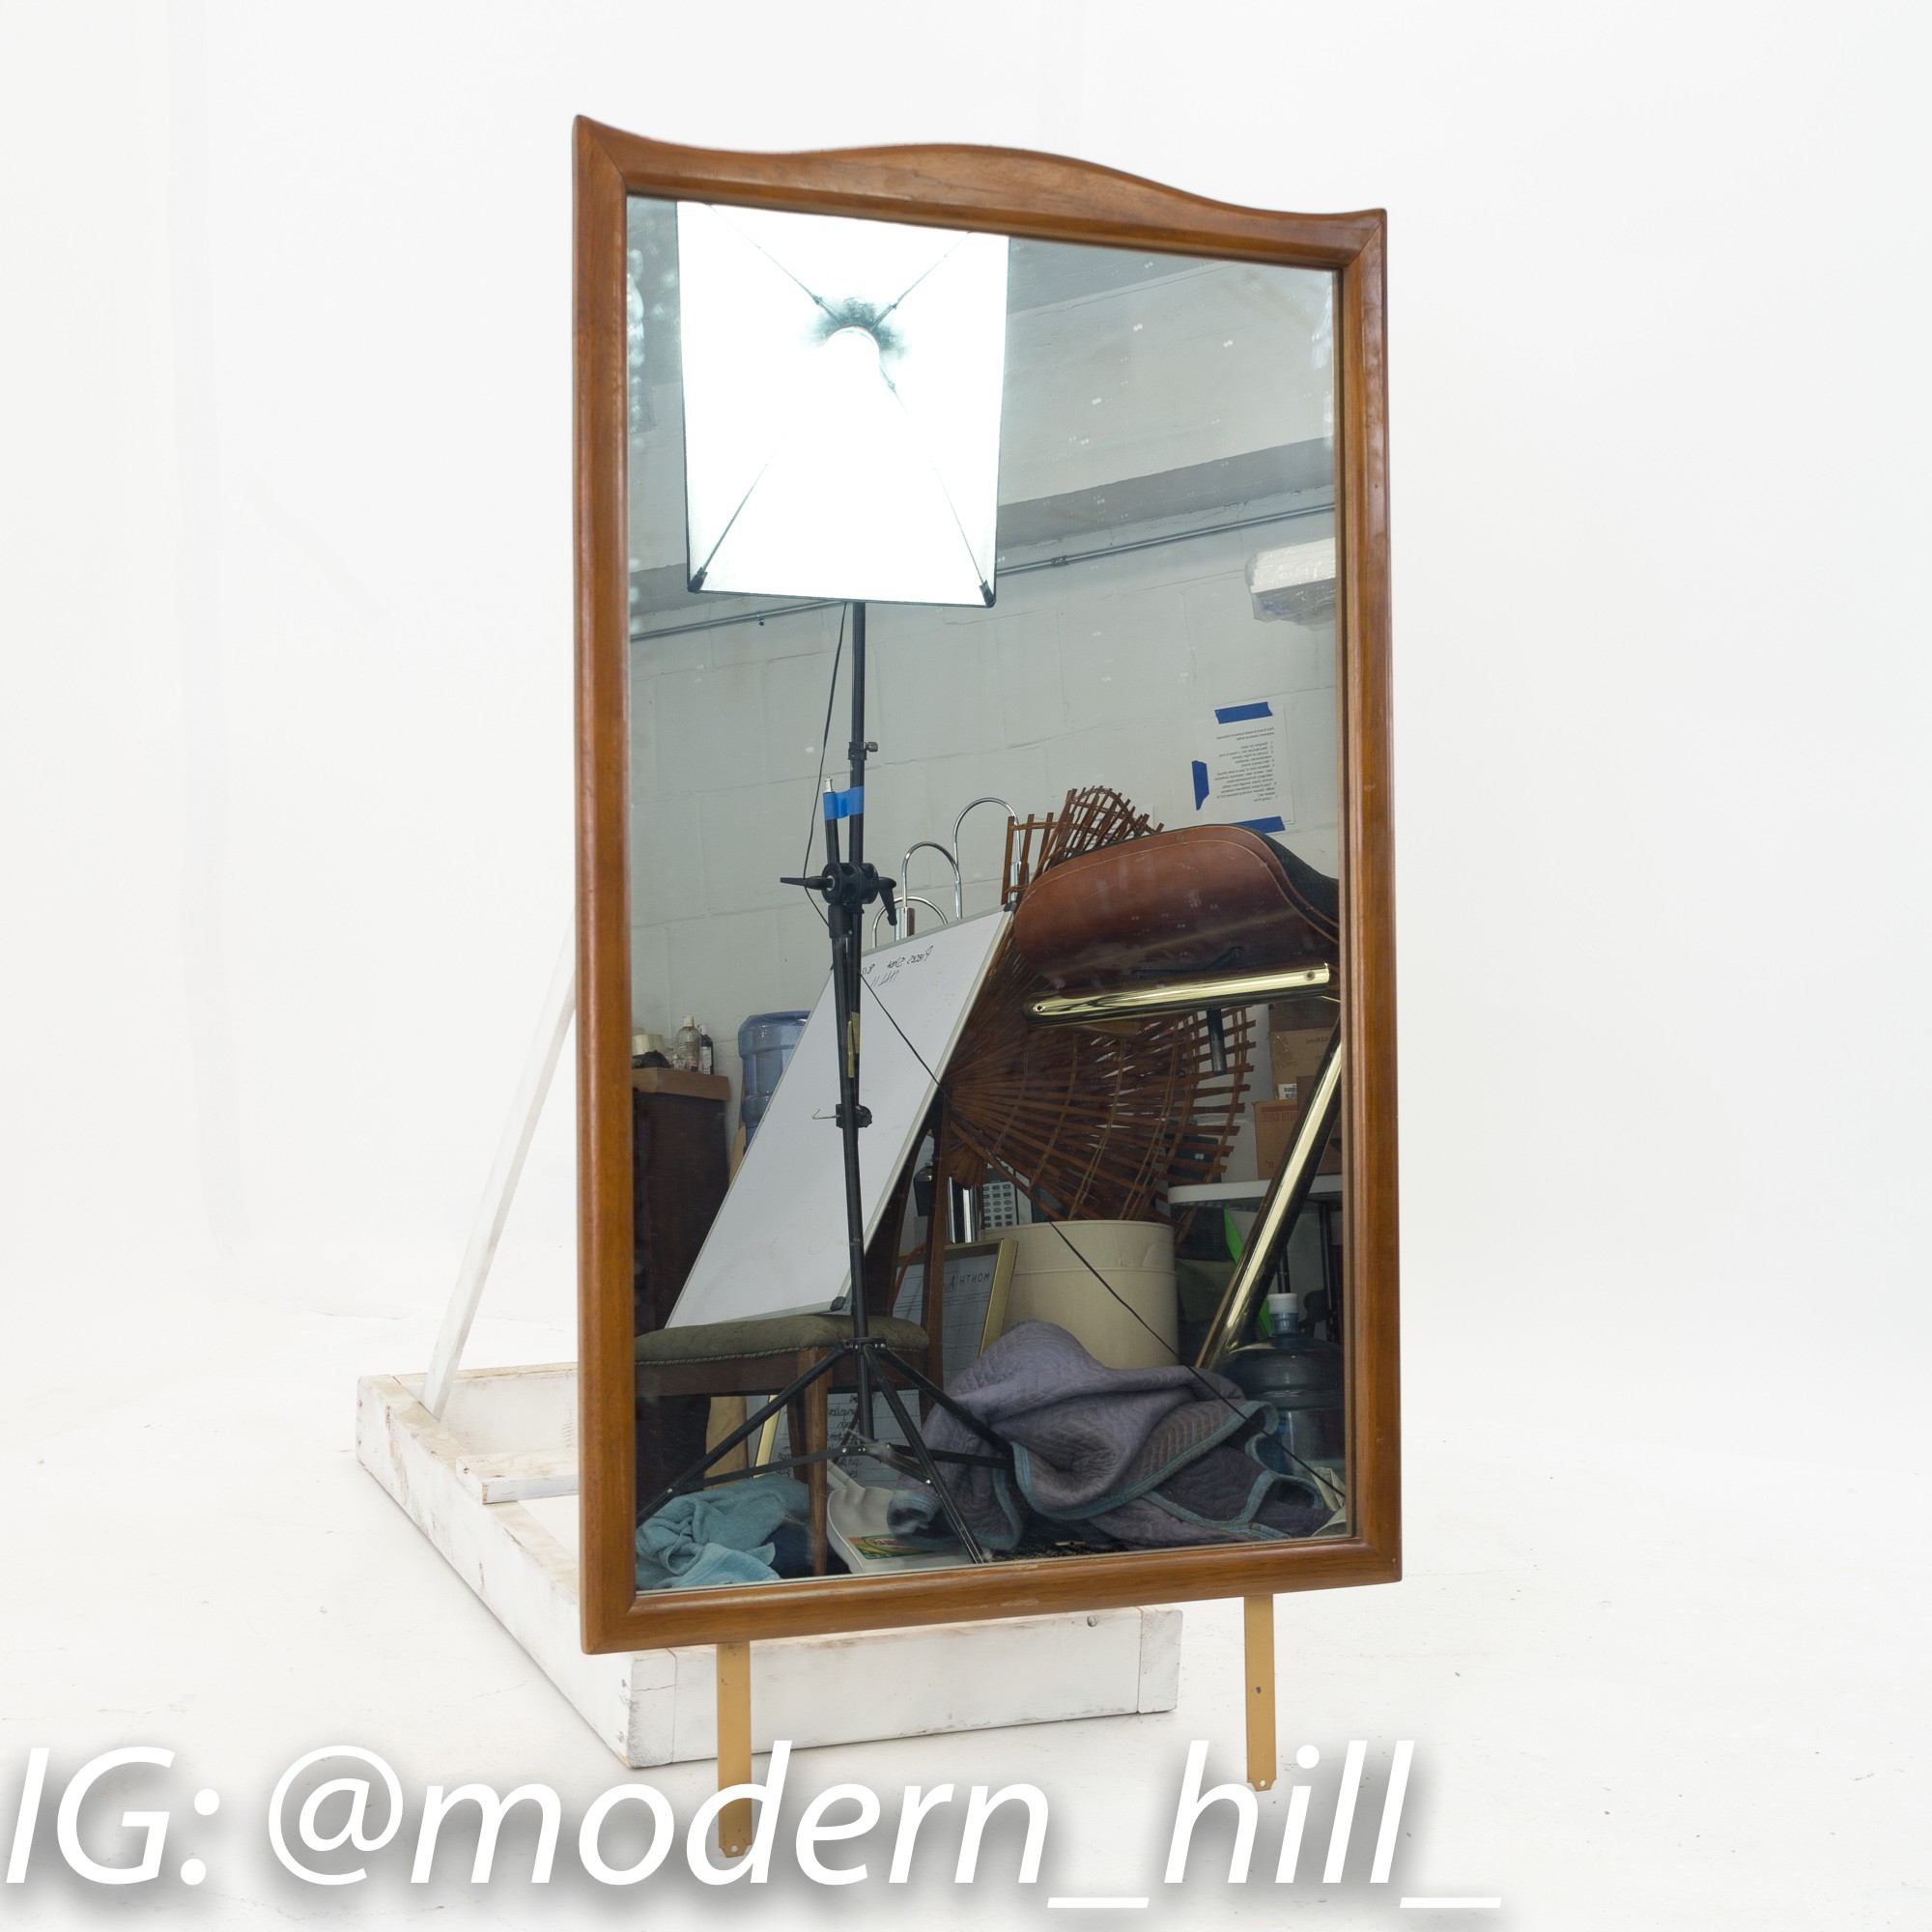 Kroehler Walnut and Brass Mid Century Lowboy Dresser with Mirror